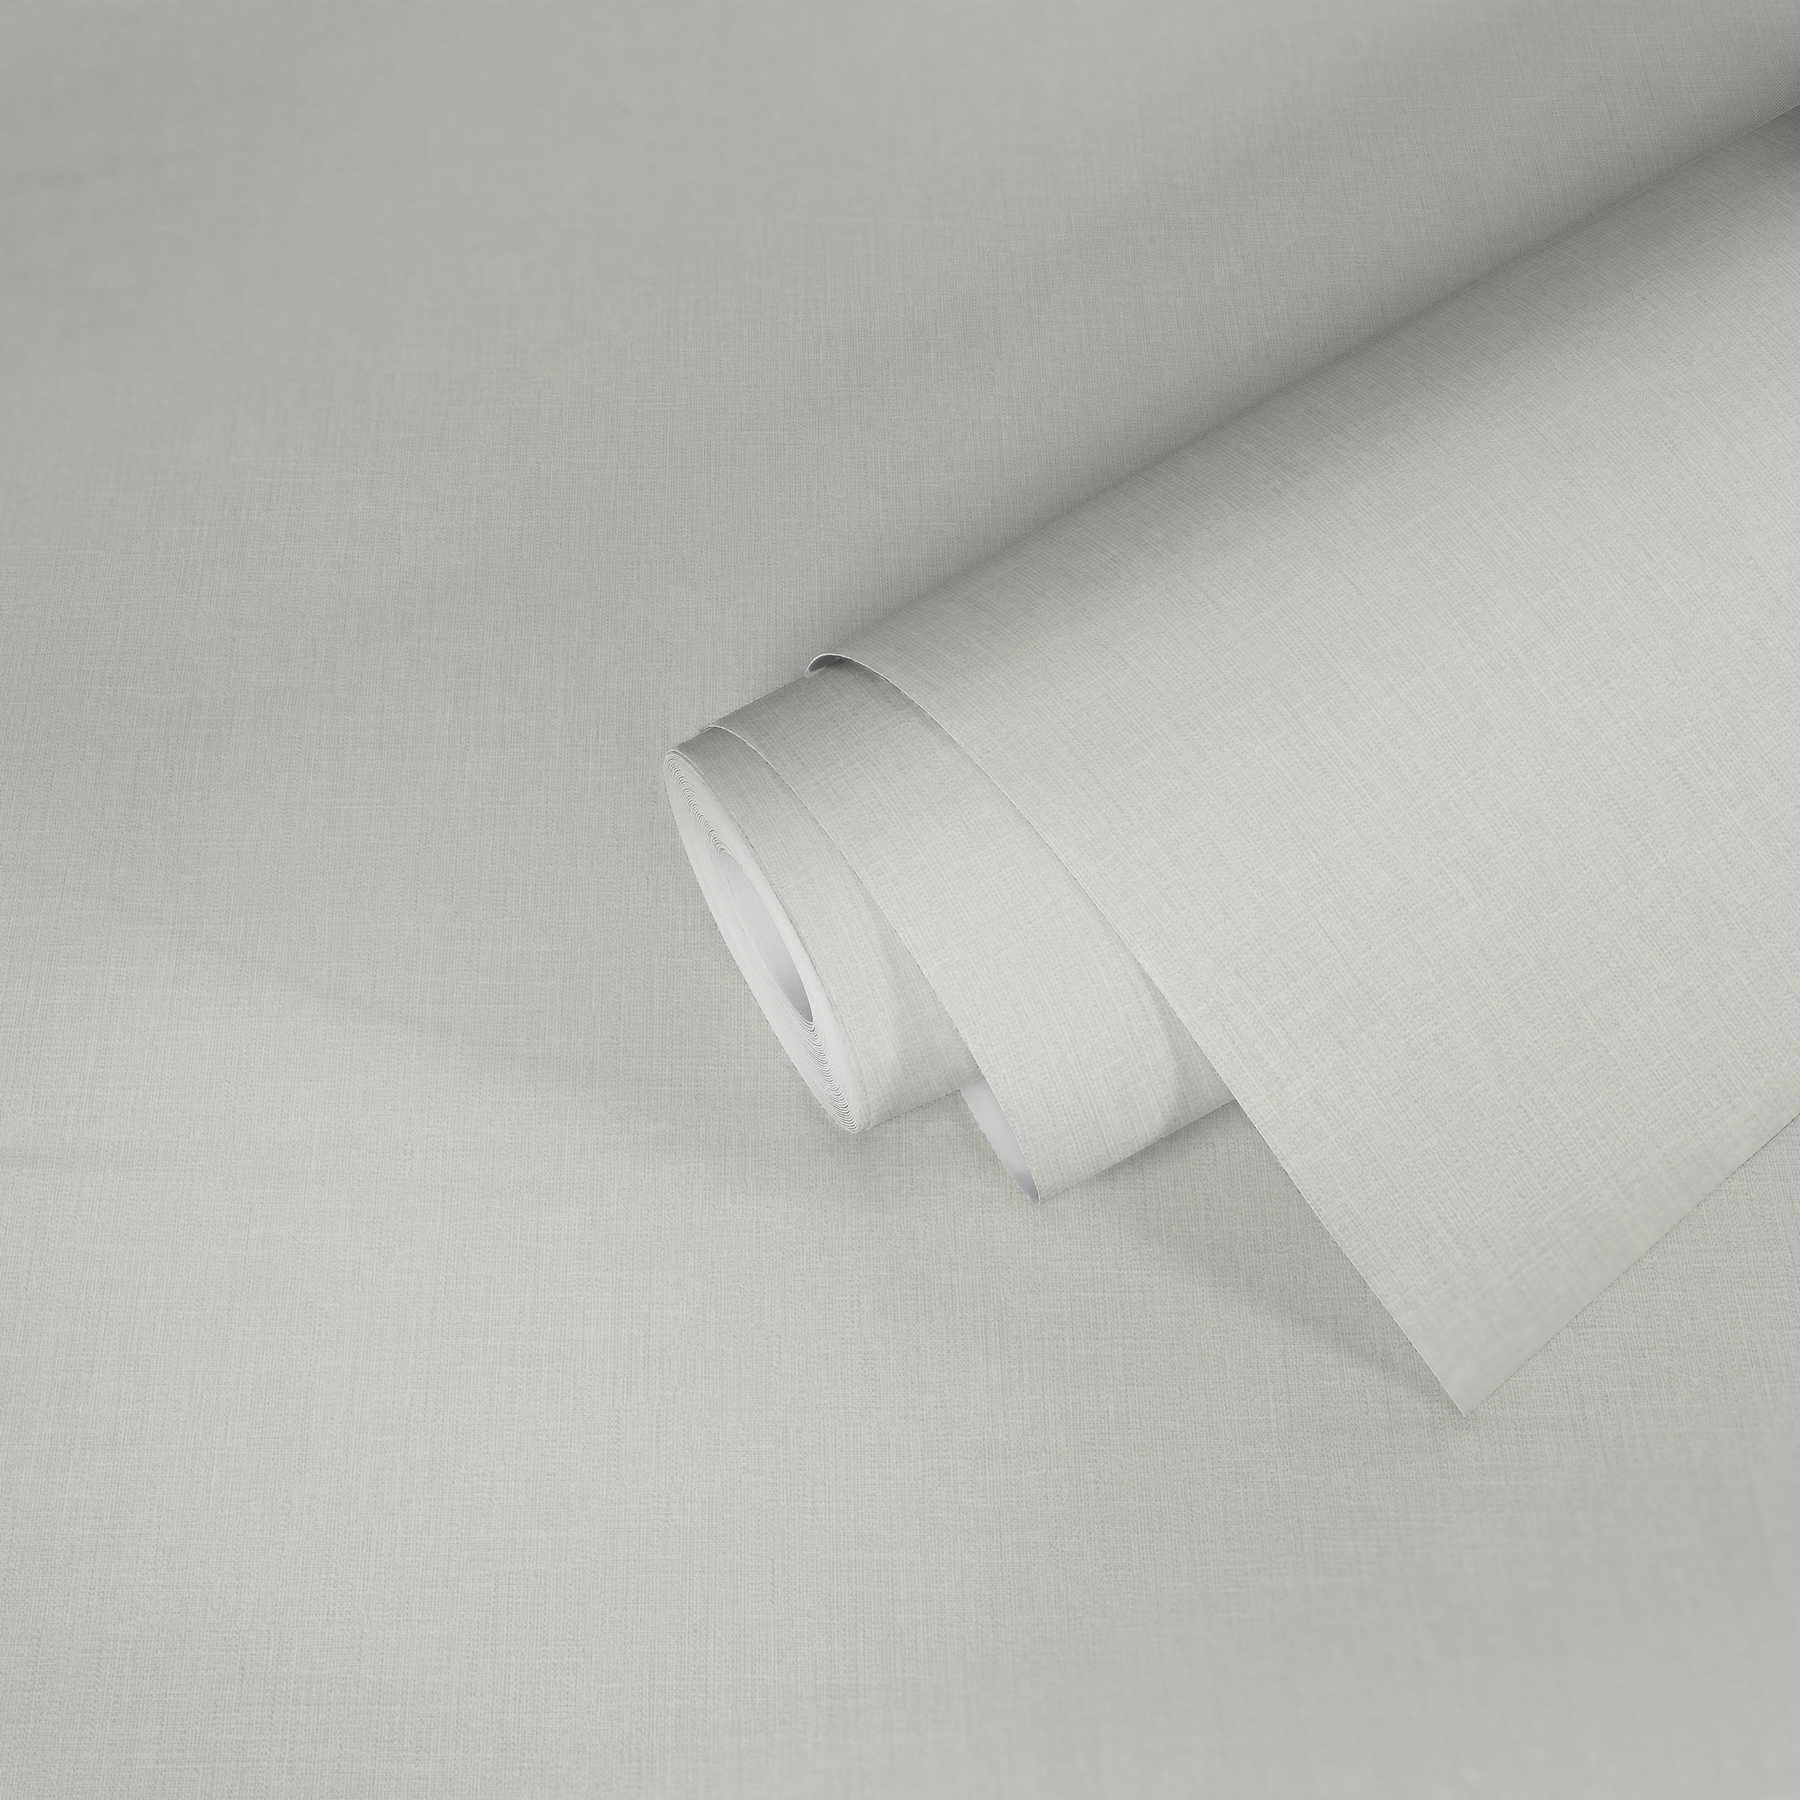             Papier peint blanc crème uni avec structure textile dans le style maison de campagne
        